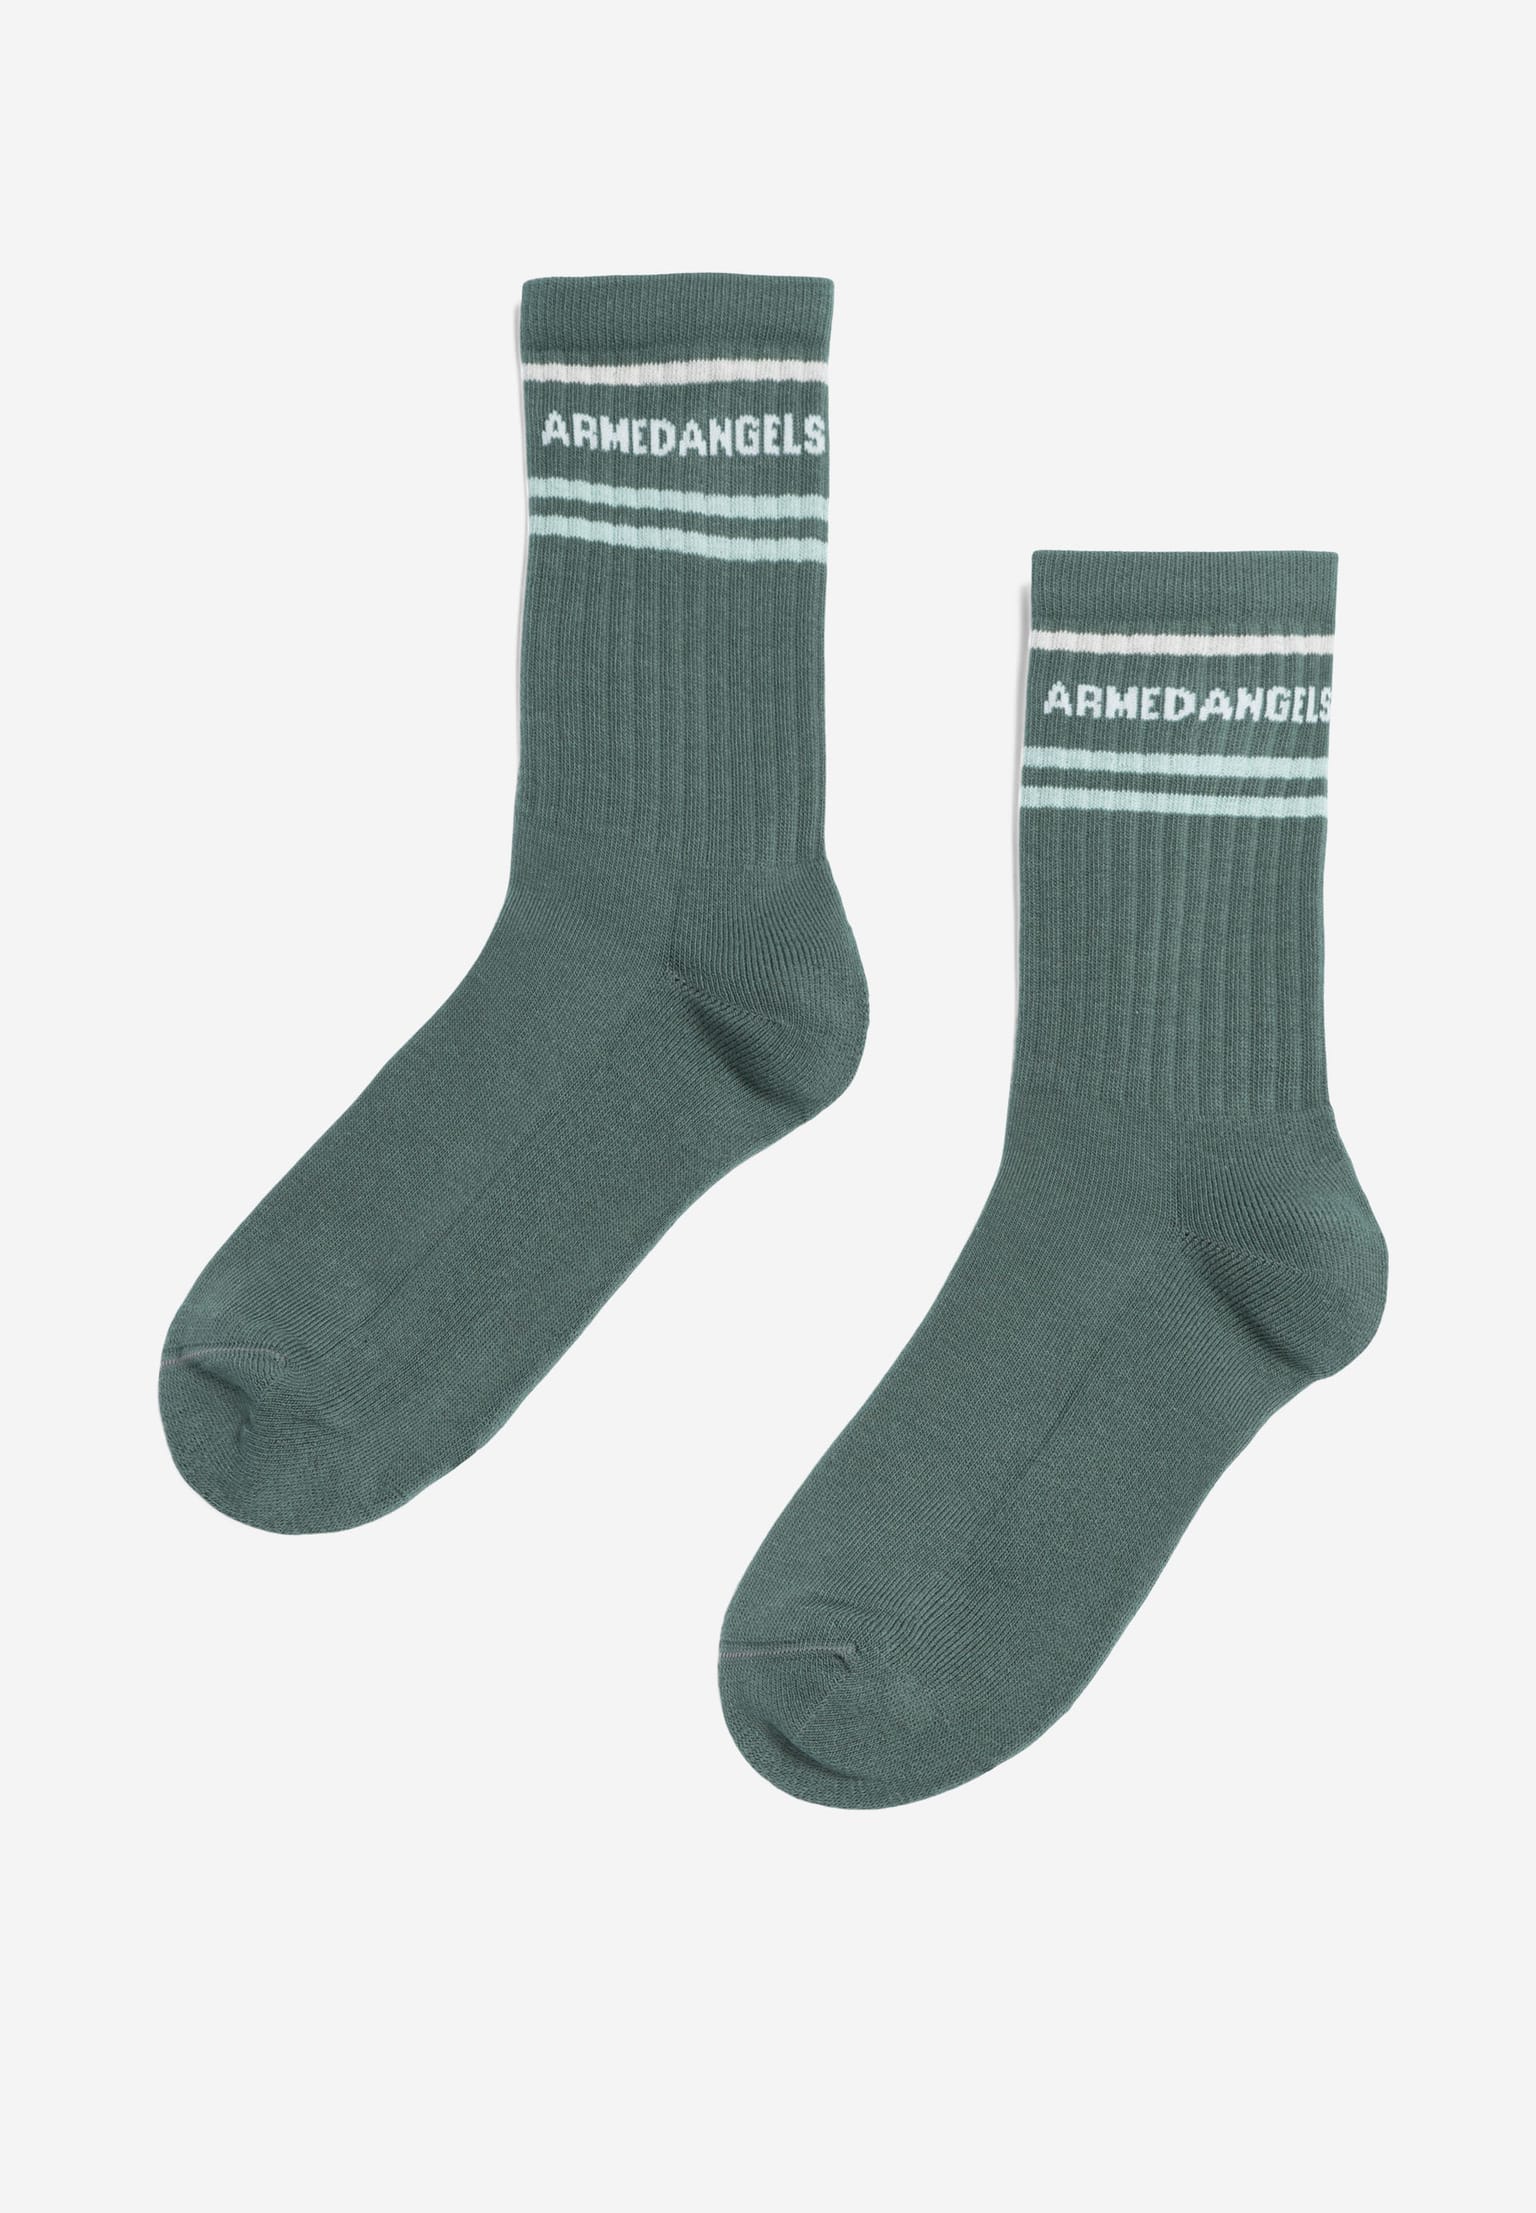 ARMEDANGELS Saamus Armedangels Socken green spruce 35-38